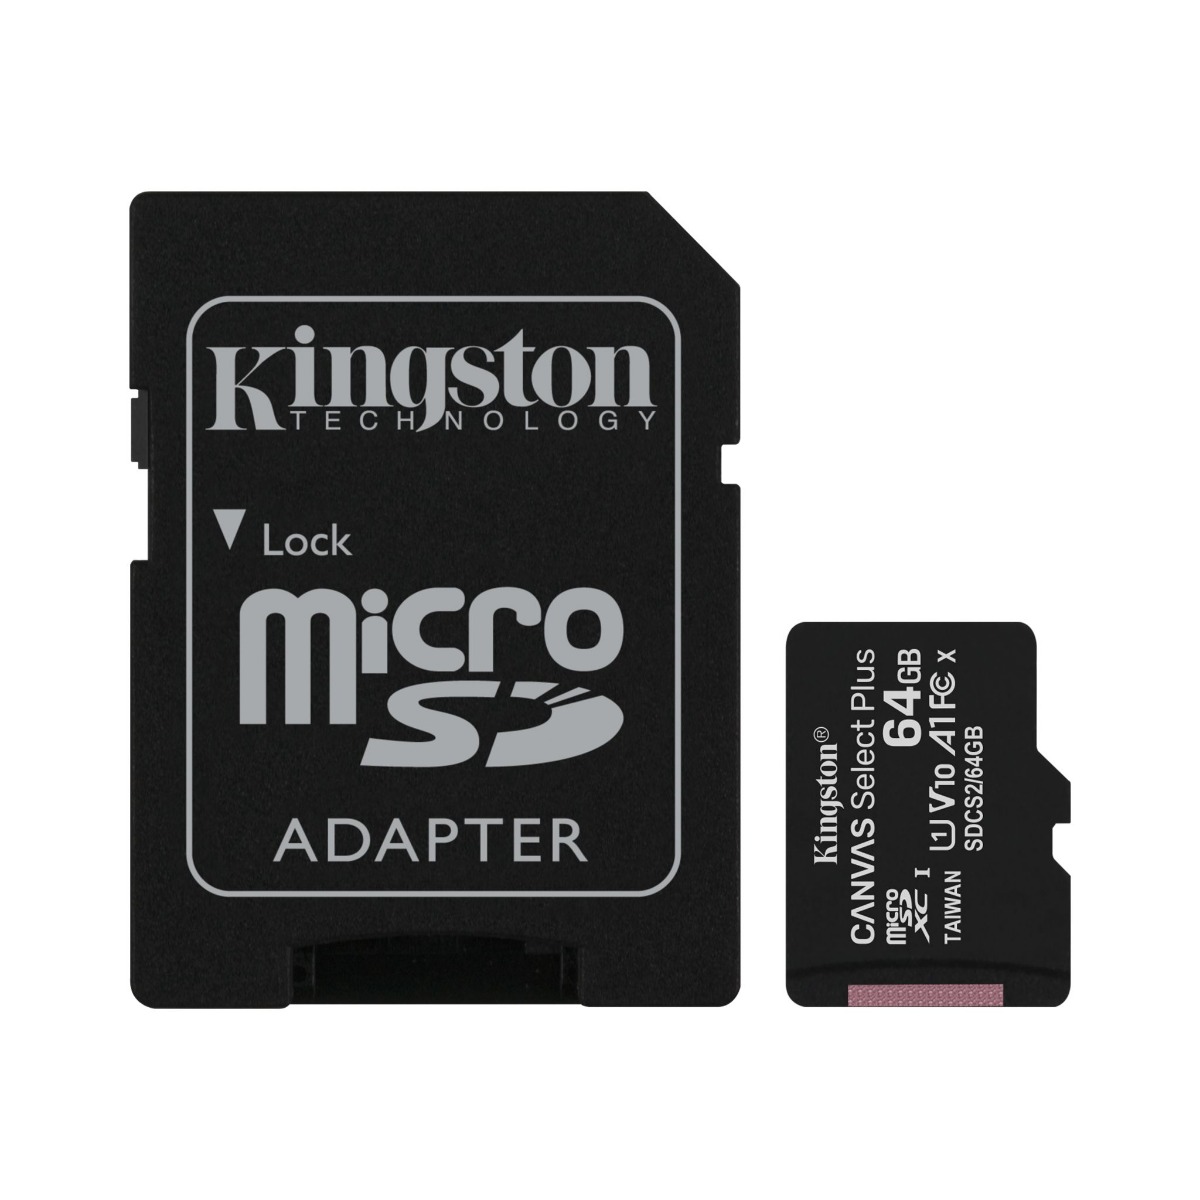 بطاقة ذاكرة مايكرو SDXC كينجستون كانفاس سيلكت  بلس مع محول، 64 جيجا - اسود